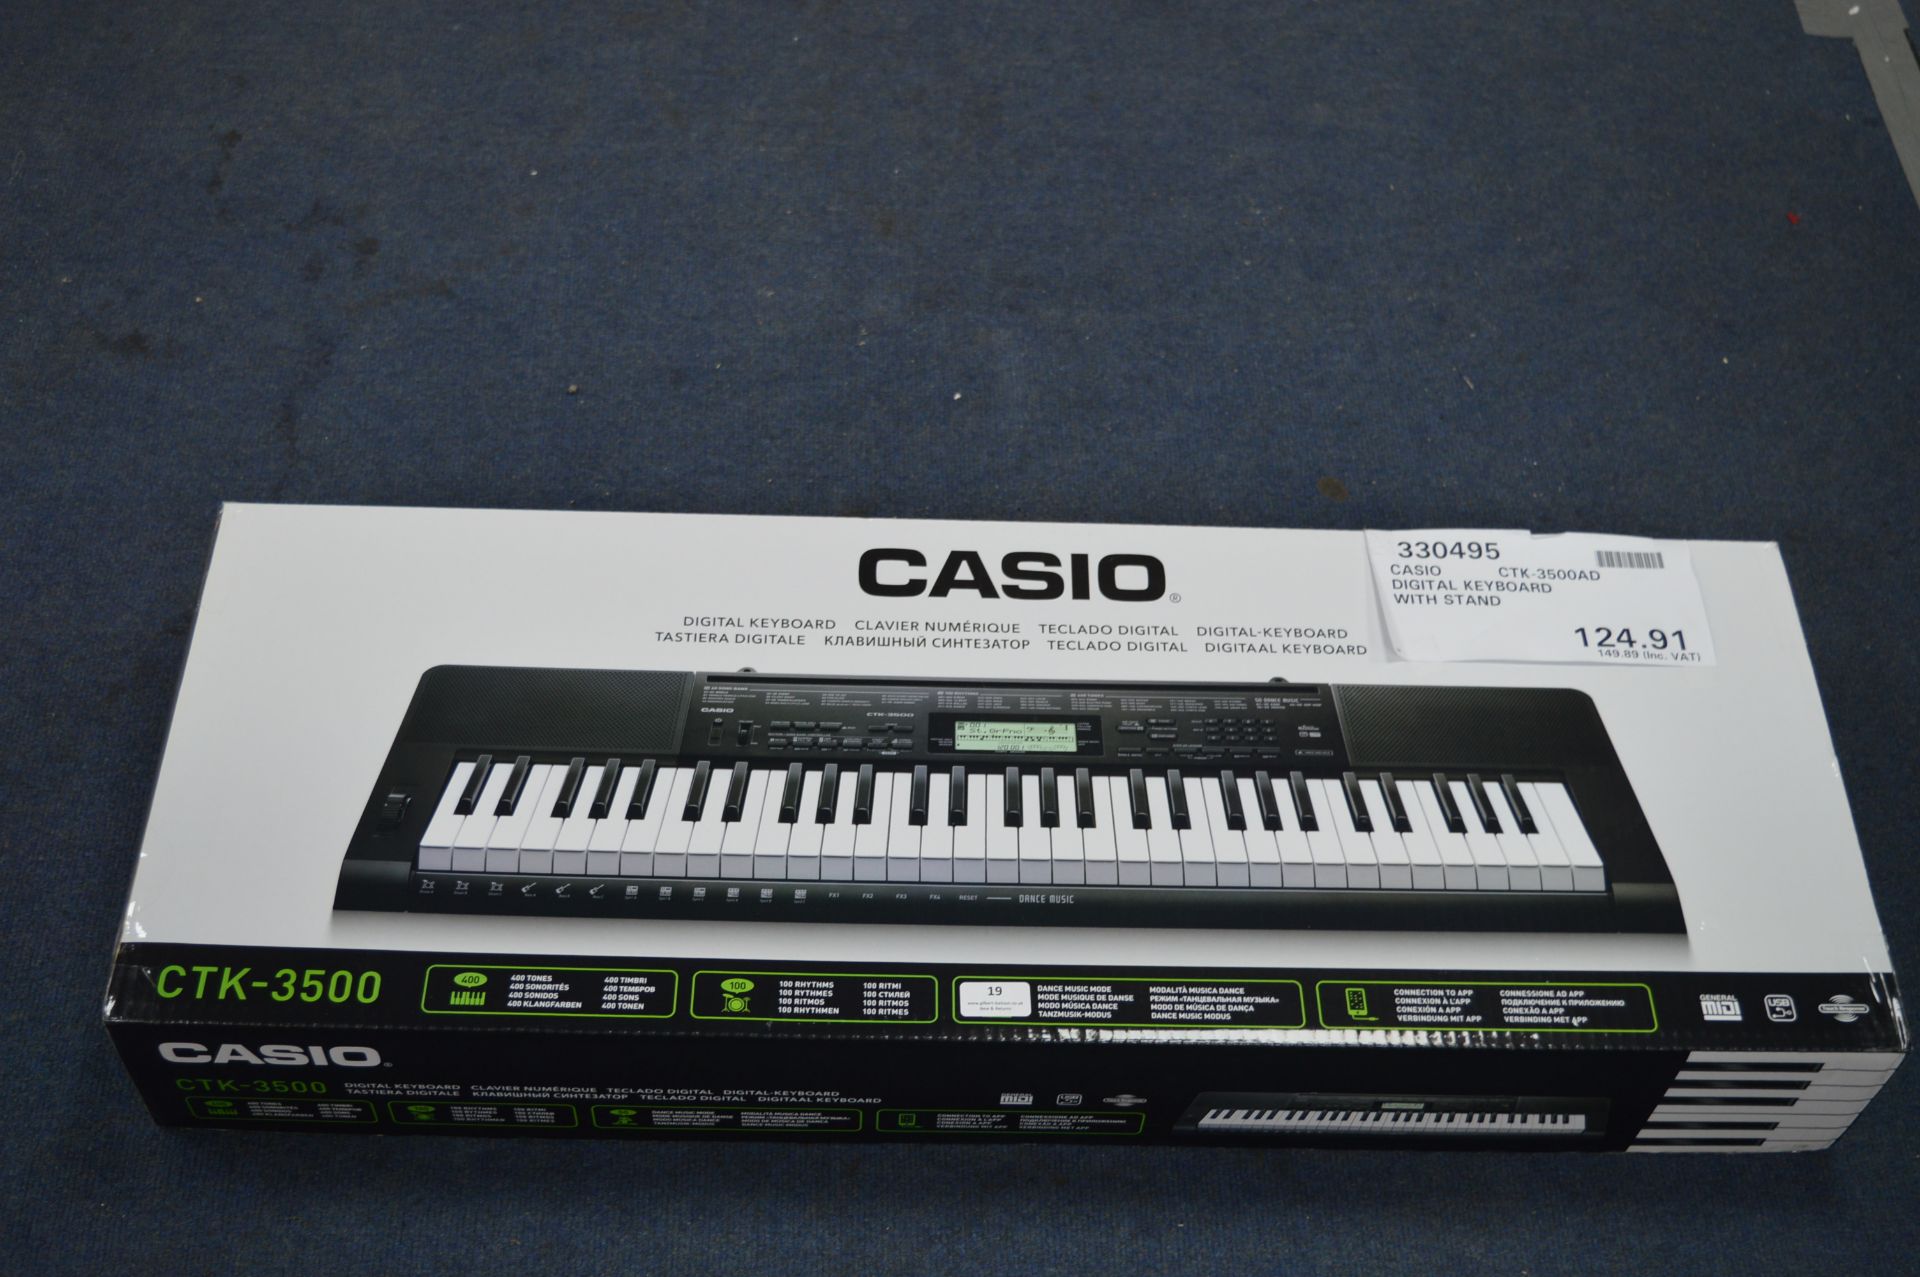 *Casio CTK-3500 Digital Keyboard